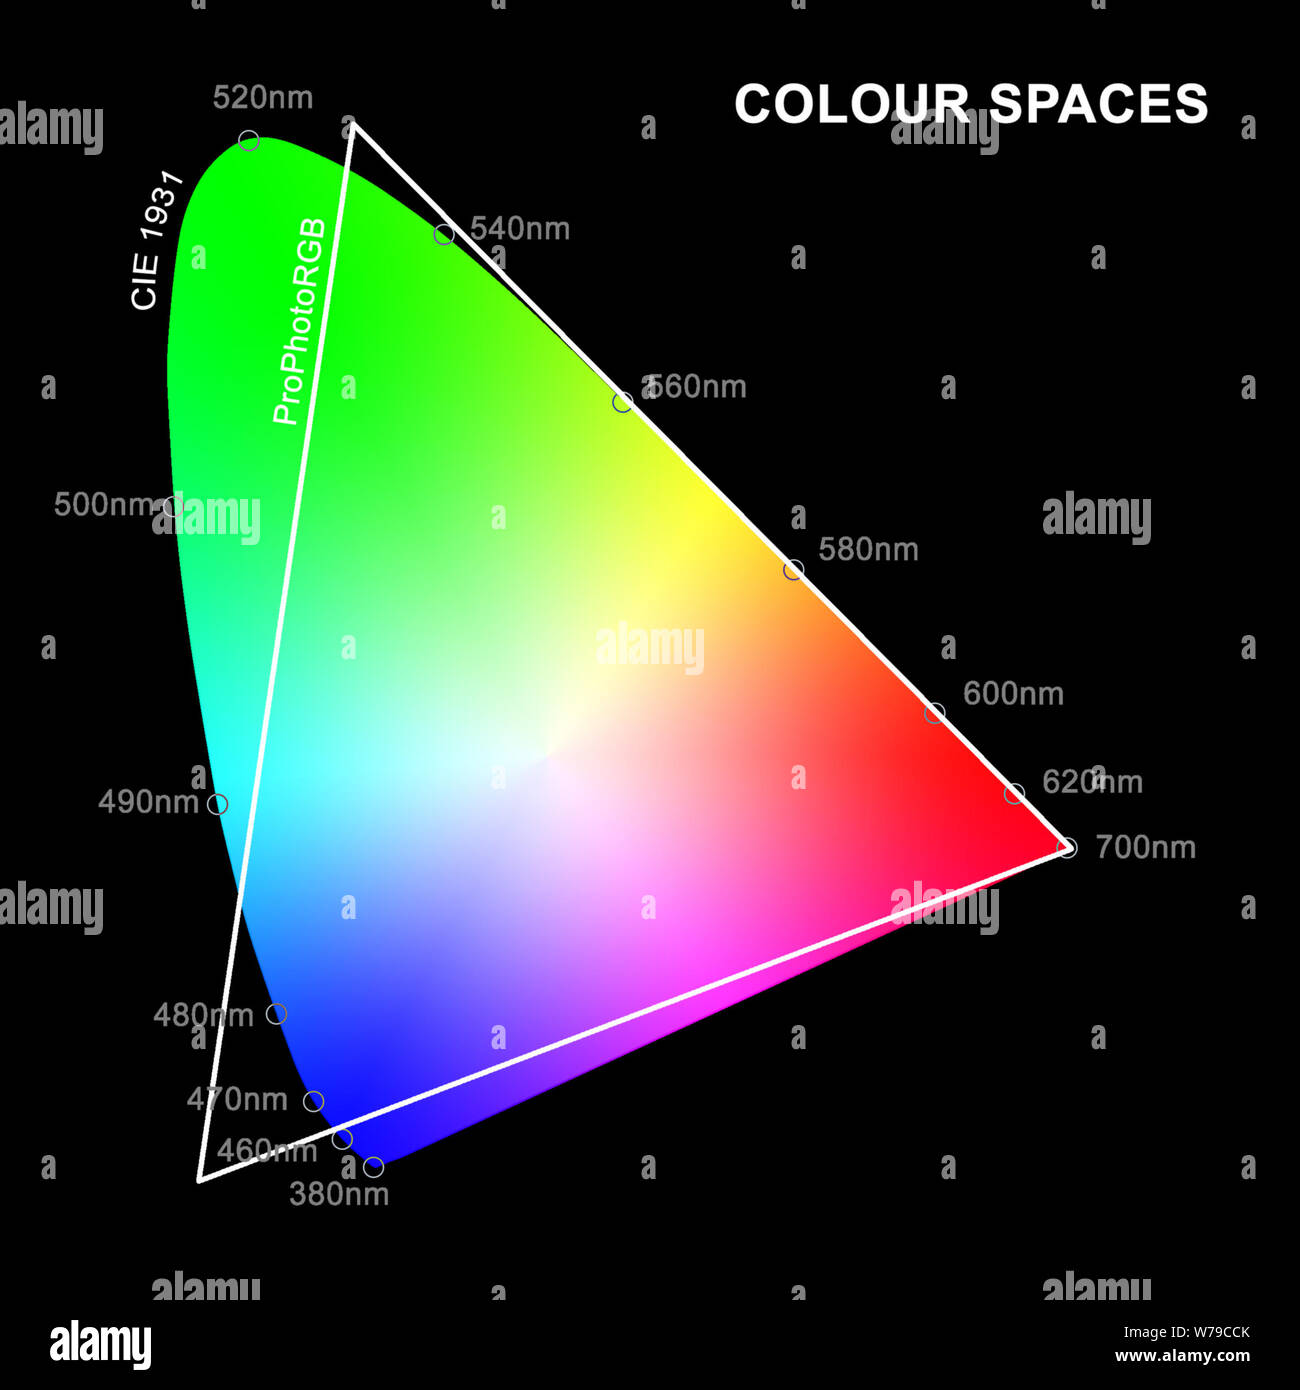 Una ilustración del espacio de color ProPhotoRGB superpuestos en el diagrama de cromaticidad CIE 1931 de la percepción de color humana con longitudes de onda en nm. Foto de stock